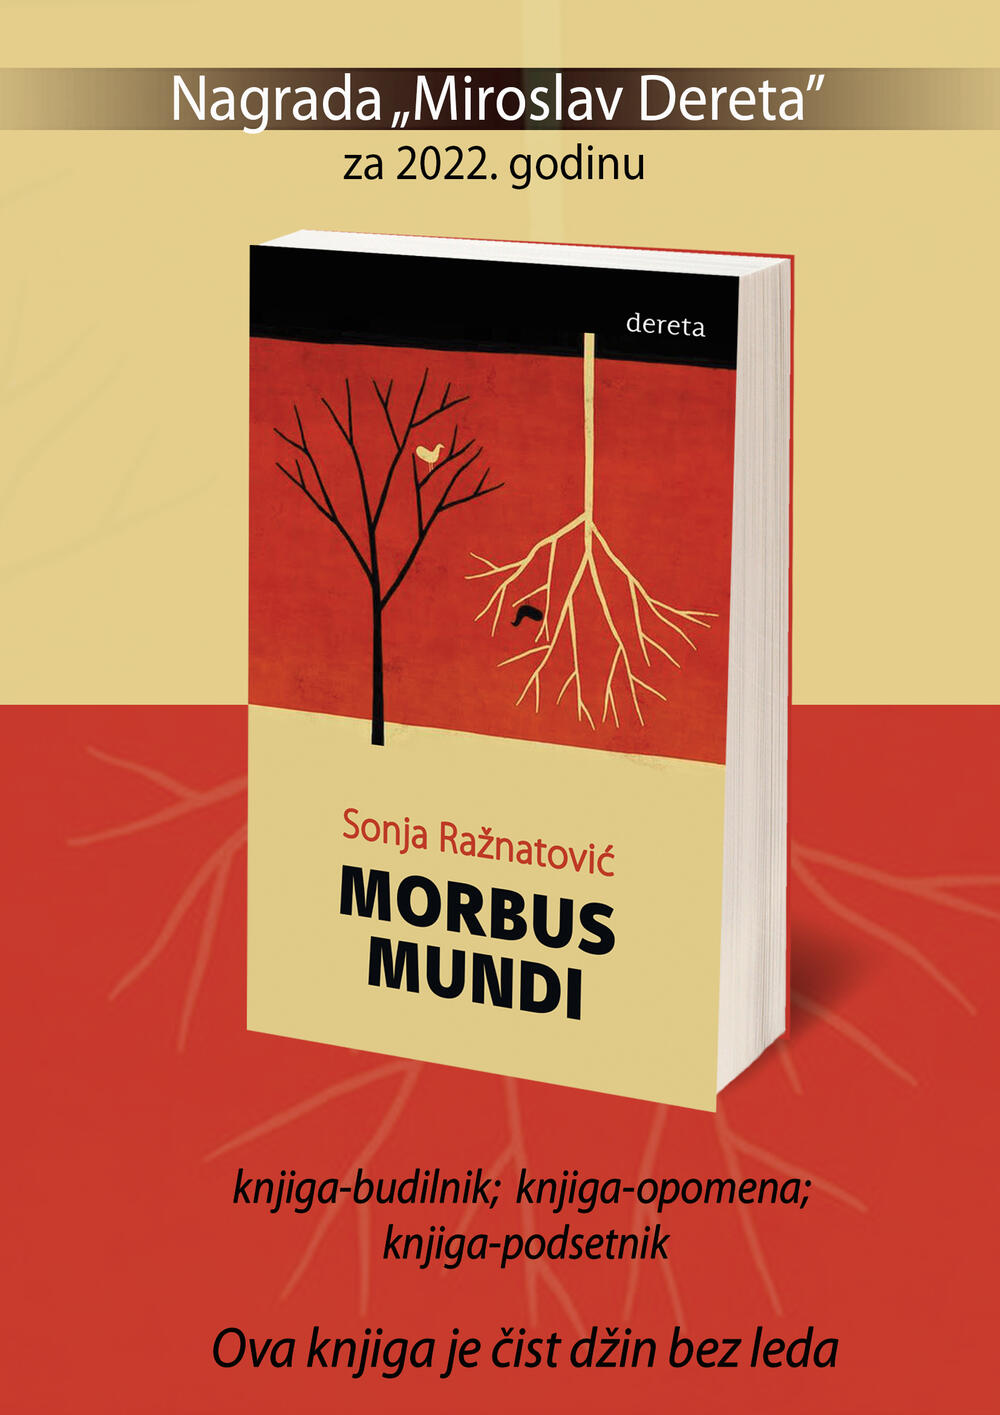 Morbus mundi, roman Sonje Ražnatović